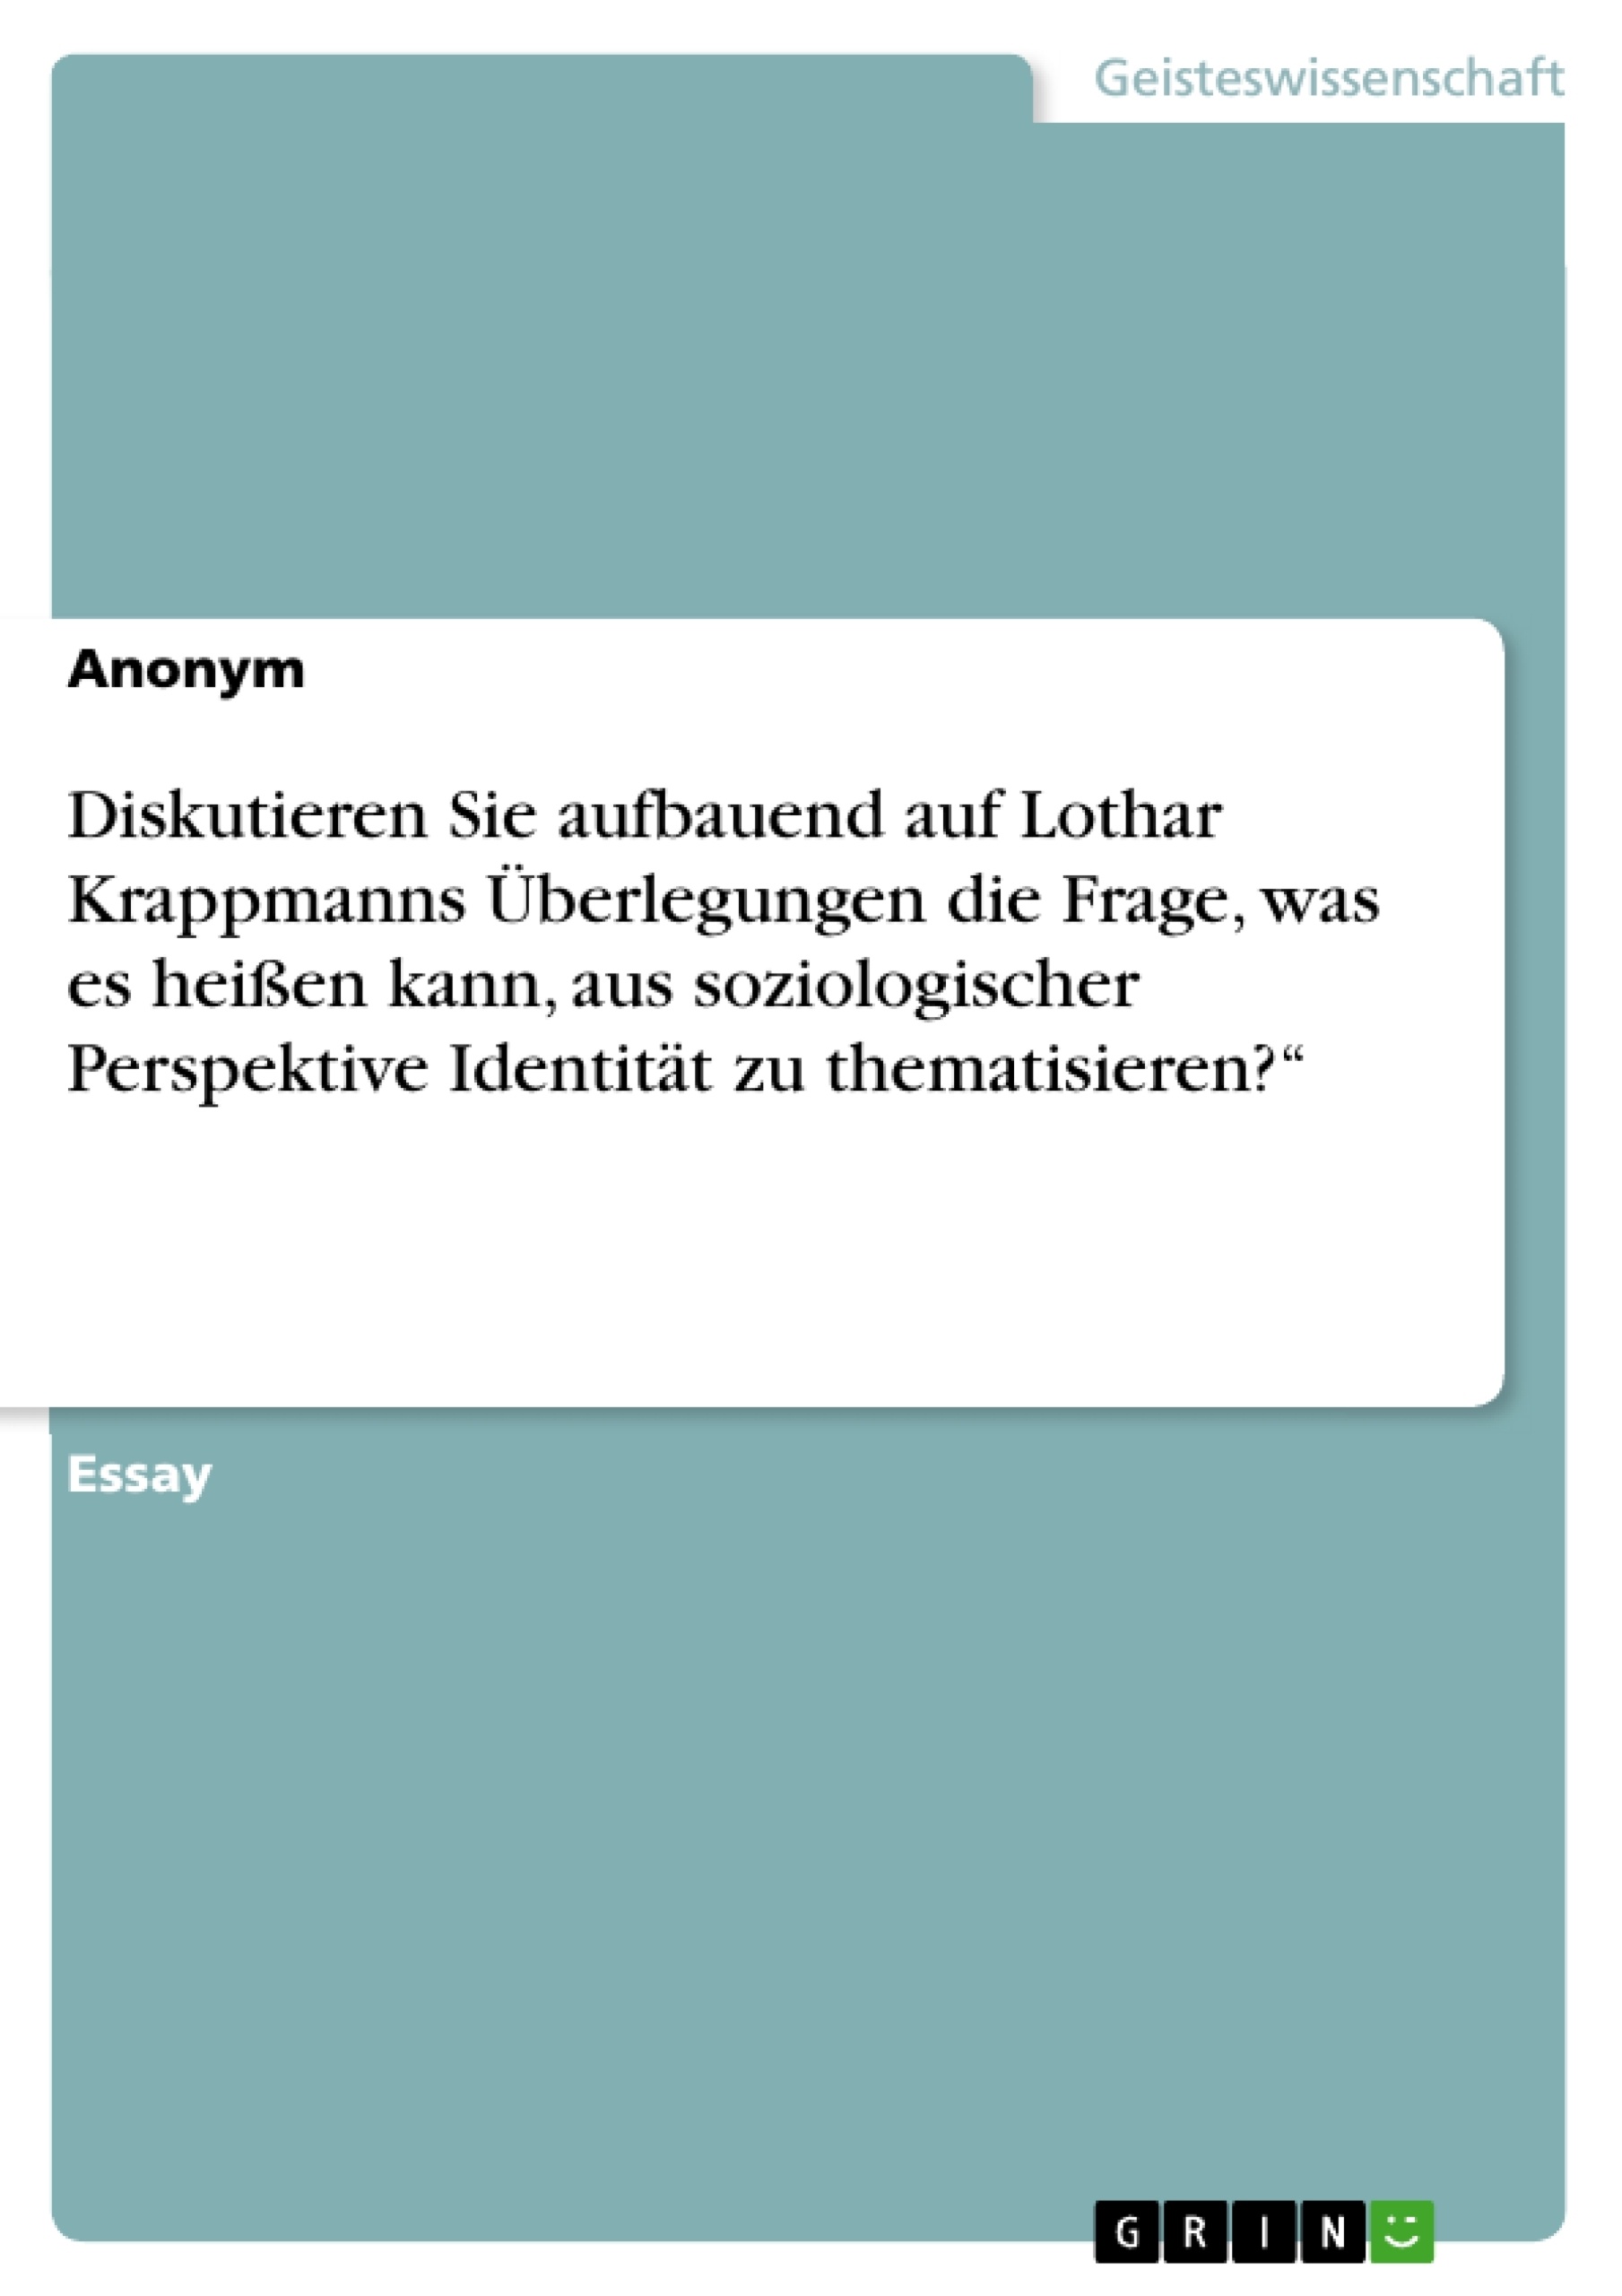 Título: Diskutieren Sie aufbauend auf Lothar Krappmanns Überlegungen die Frage, was es heißen kann, aus soziologischer Perspektive Identität zu thematisieren?“